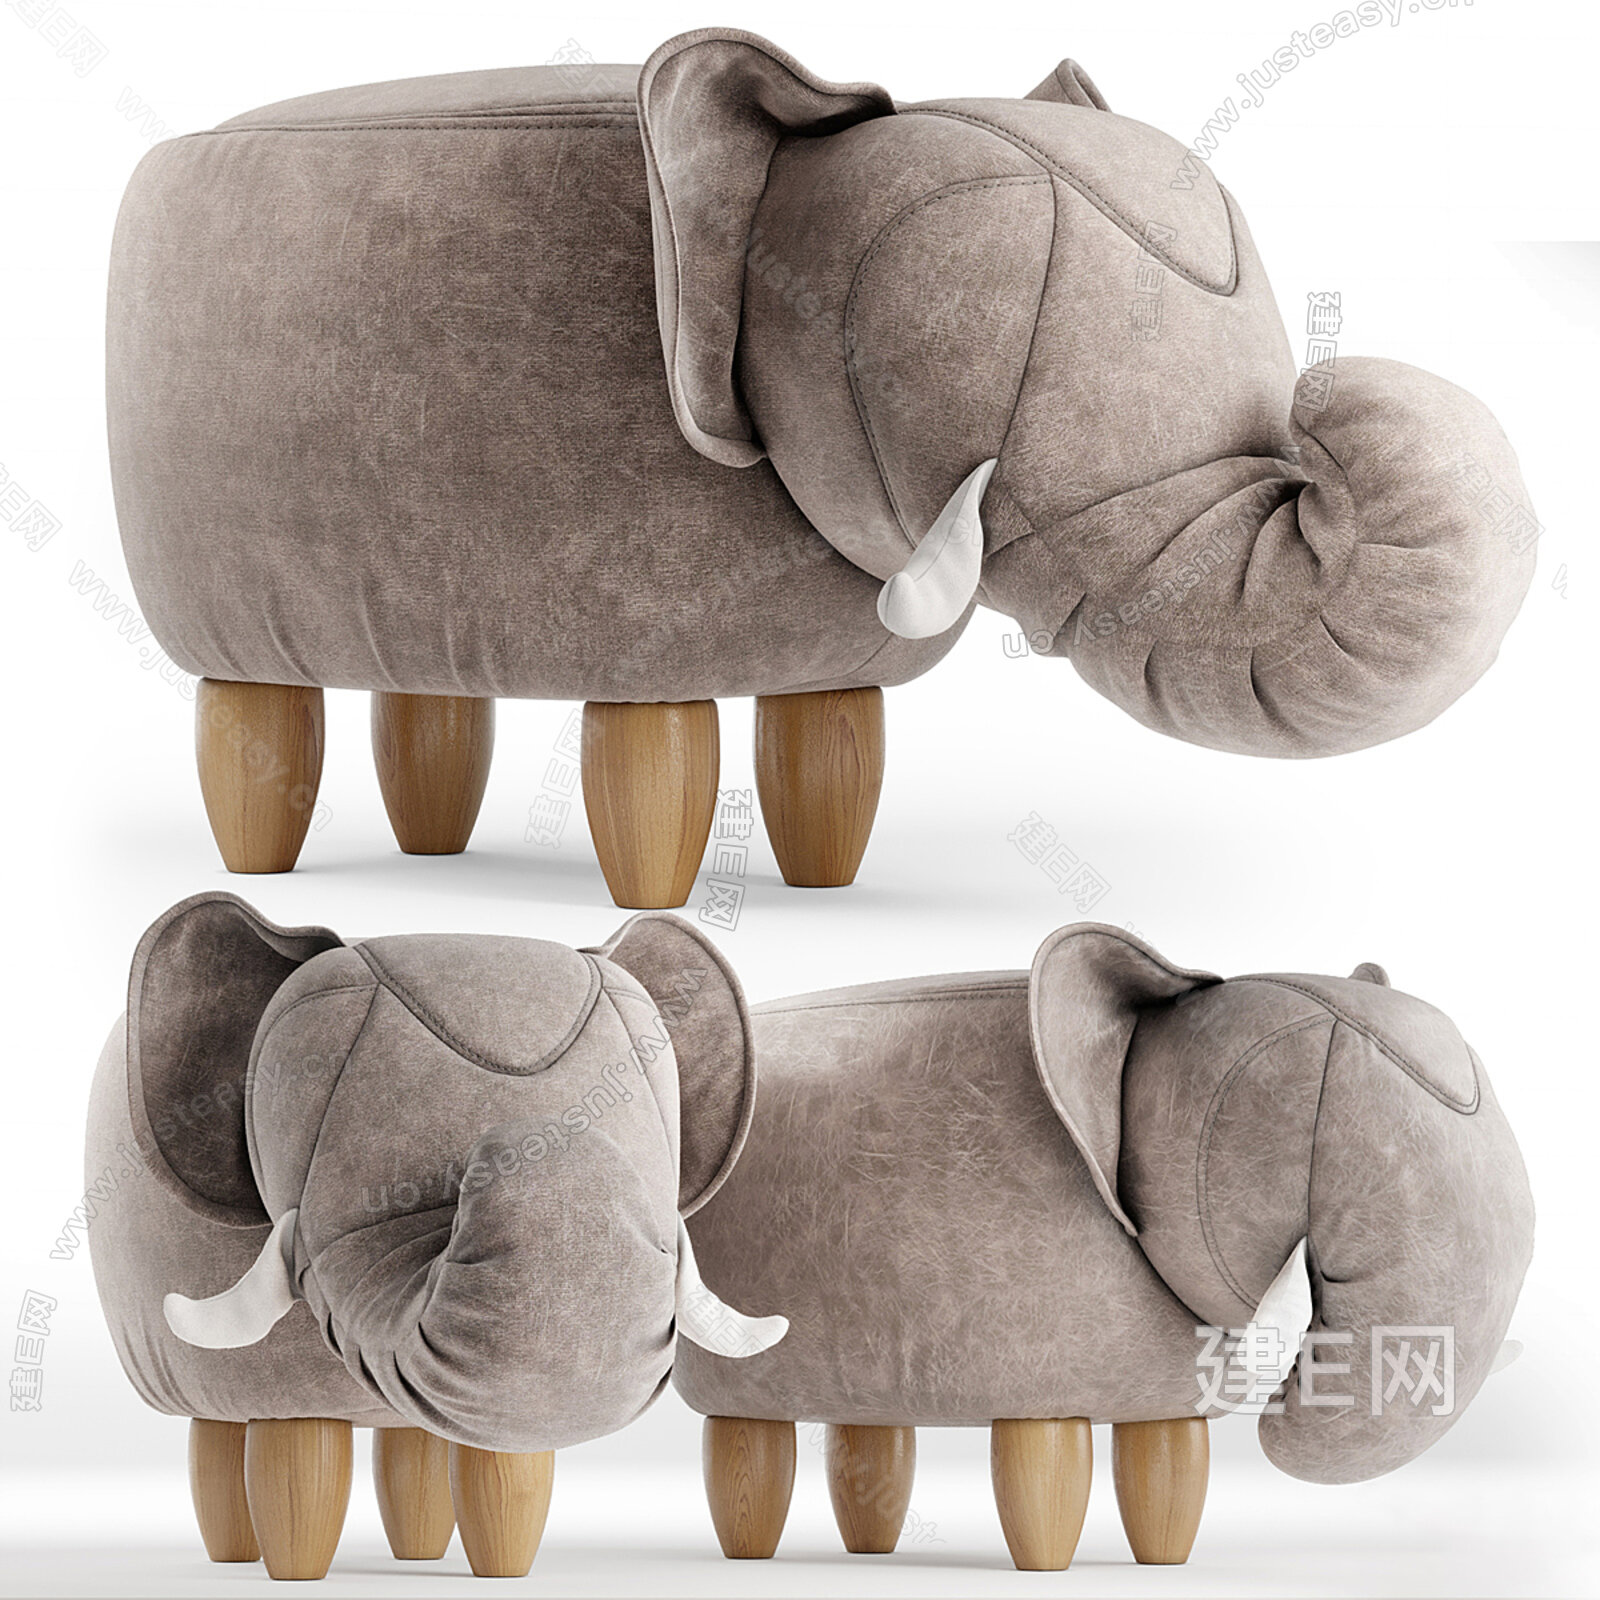 创意大象收纳凳脚凳矮凳穿鞋凳坐墩家用动物凳子储物换鞋凳沙发凳-阿里巴巴